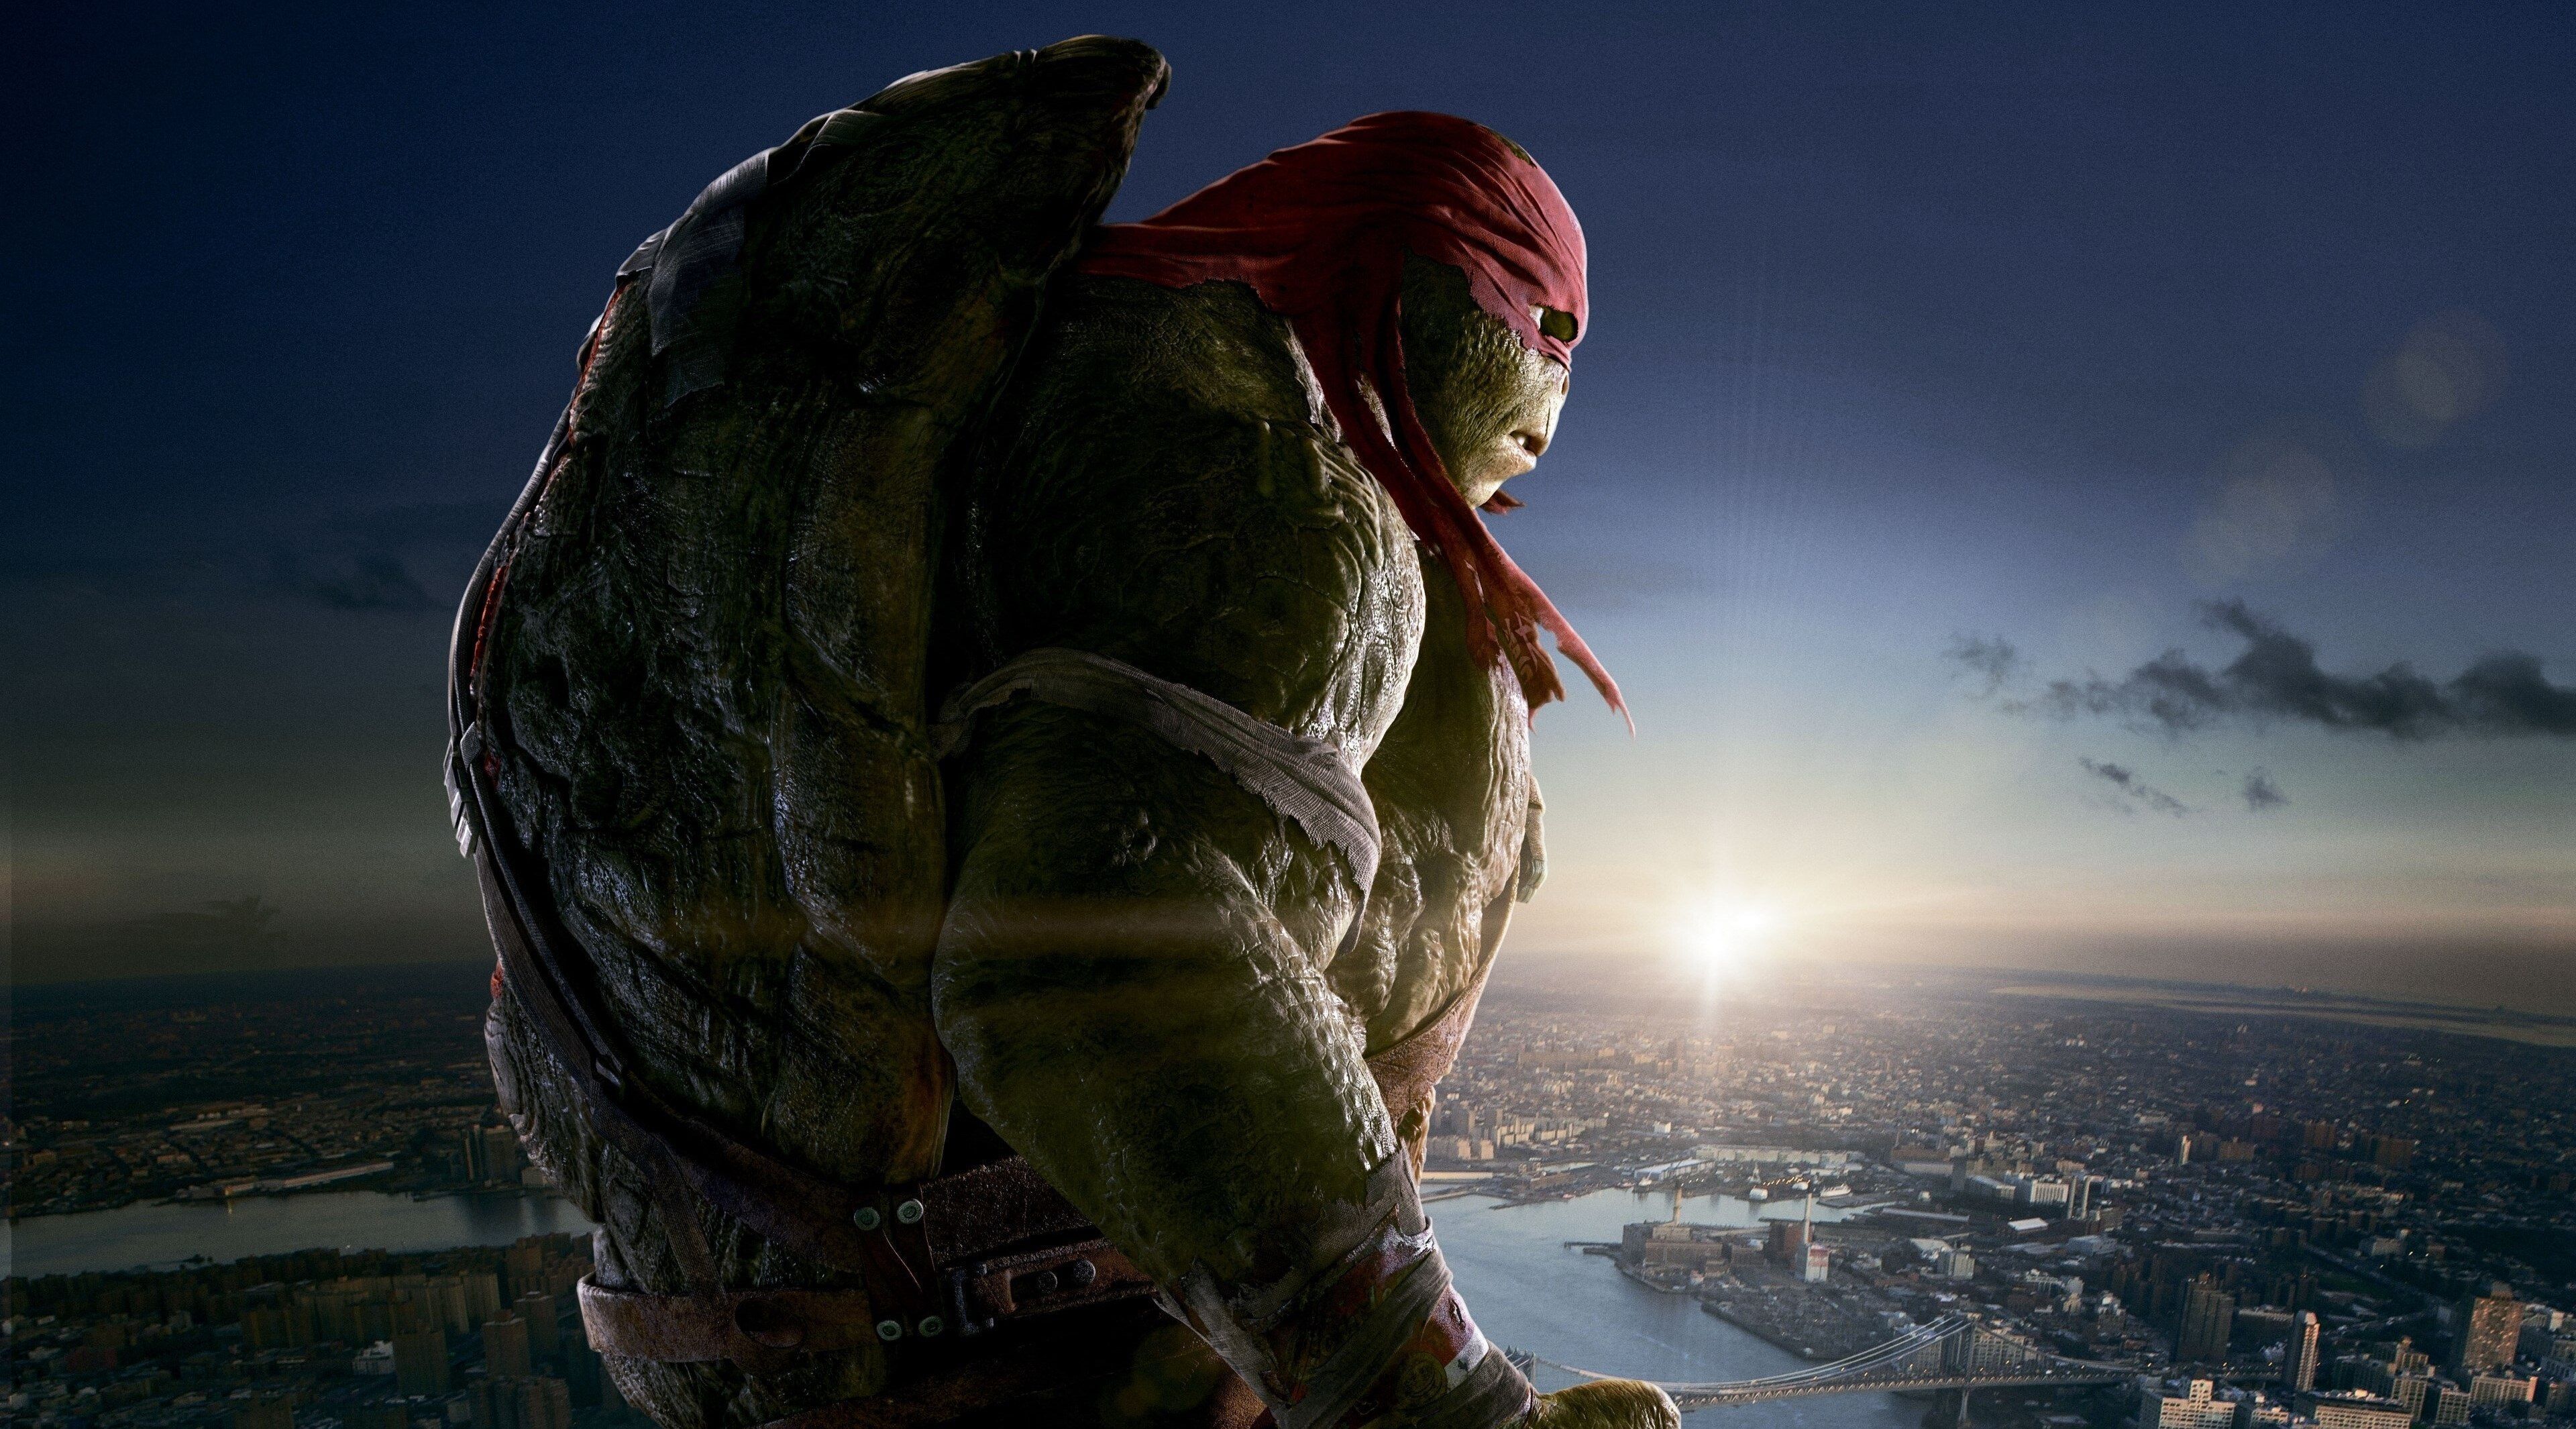 Teenage mutant ninja turtles 1080P, 2K, 4K, 5K HD wallpapers free